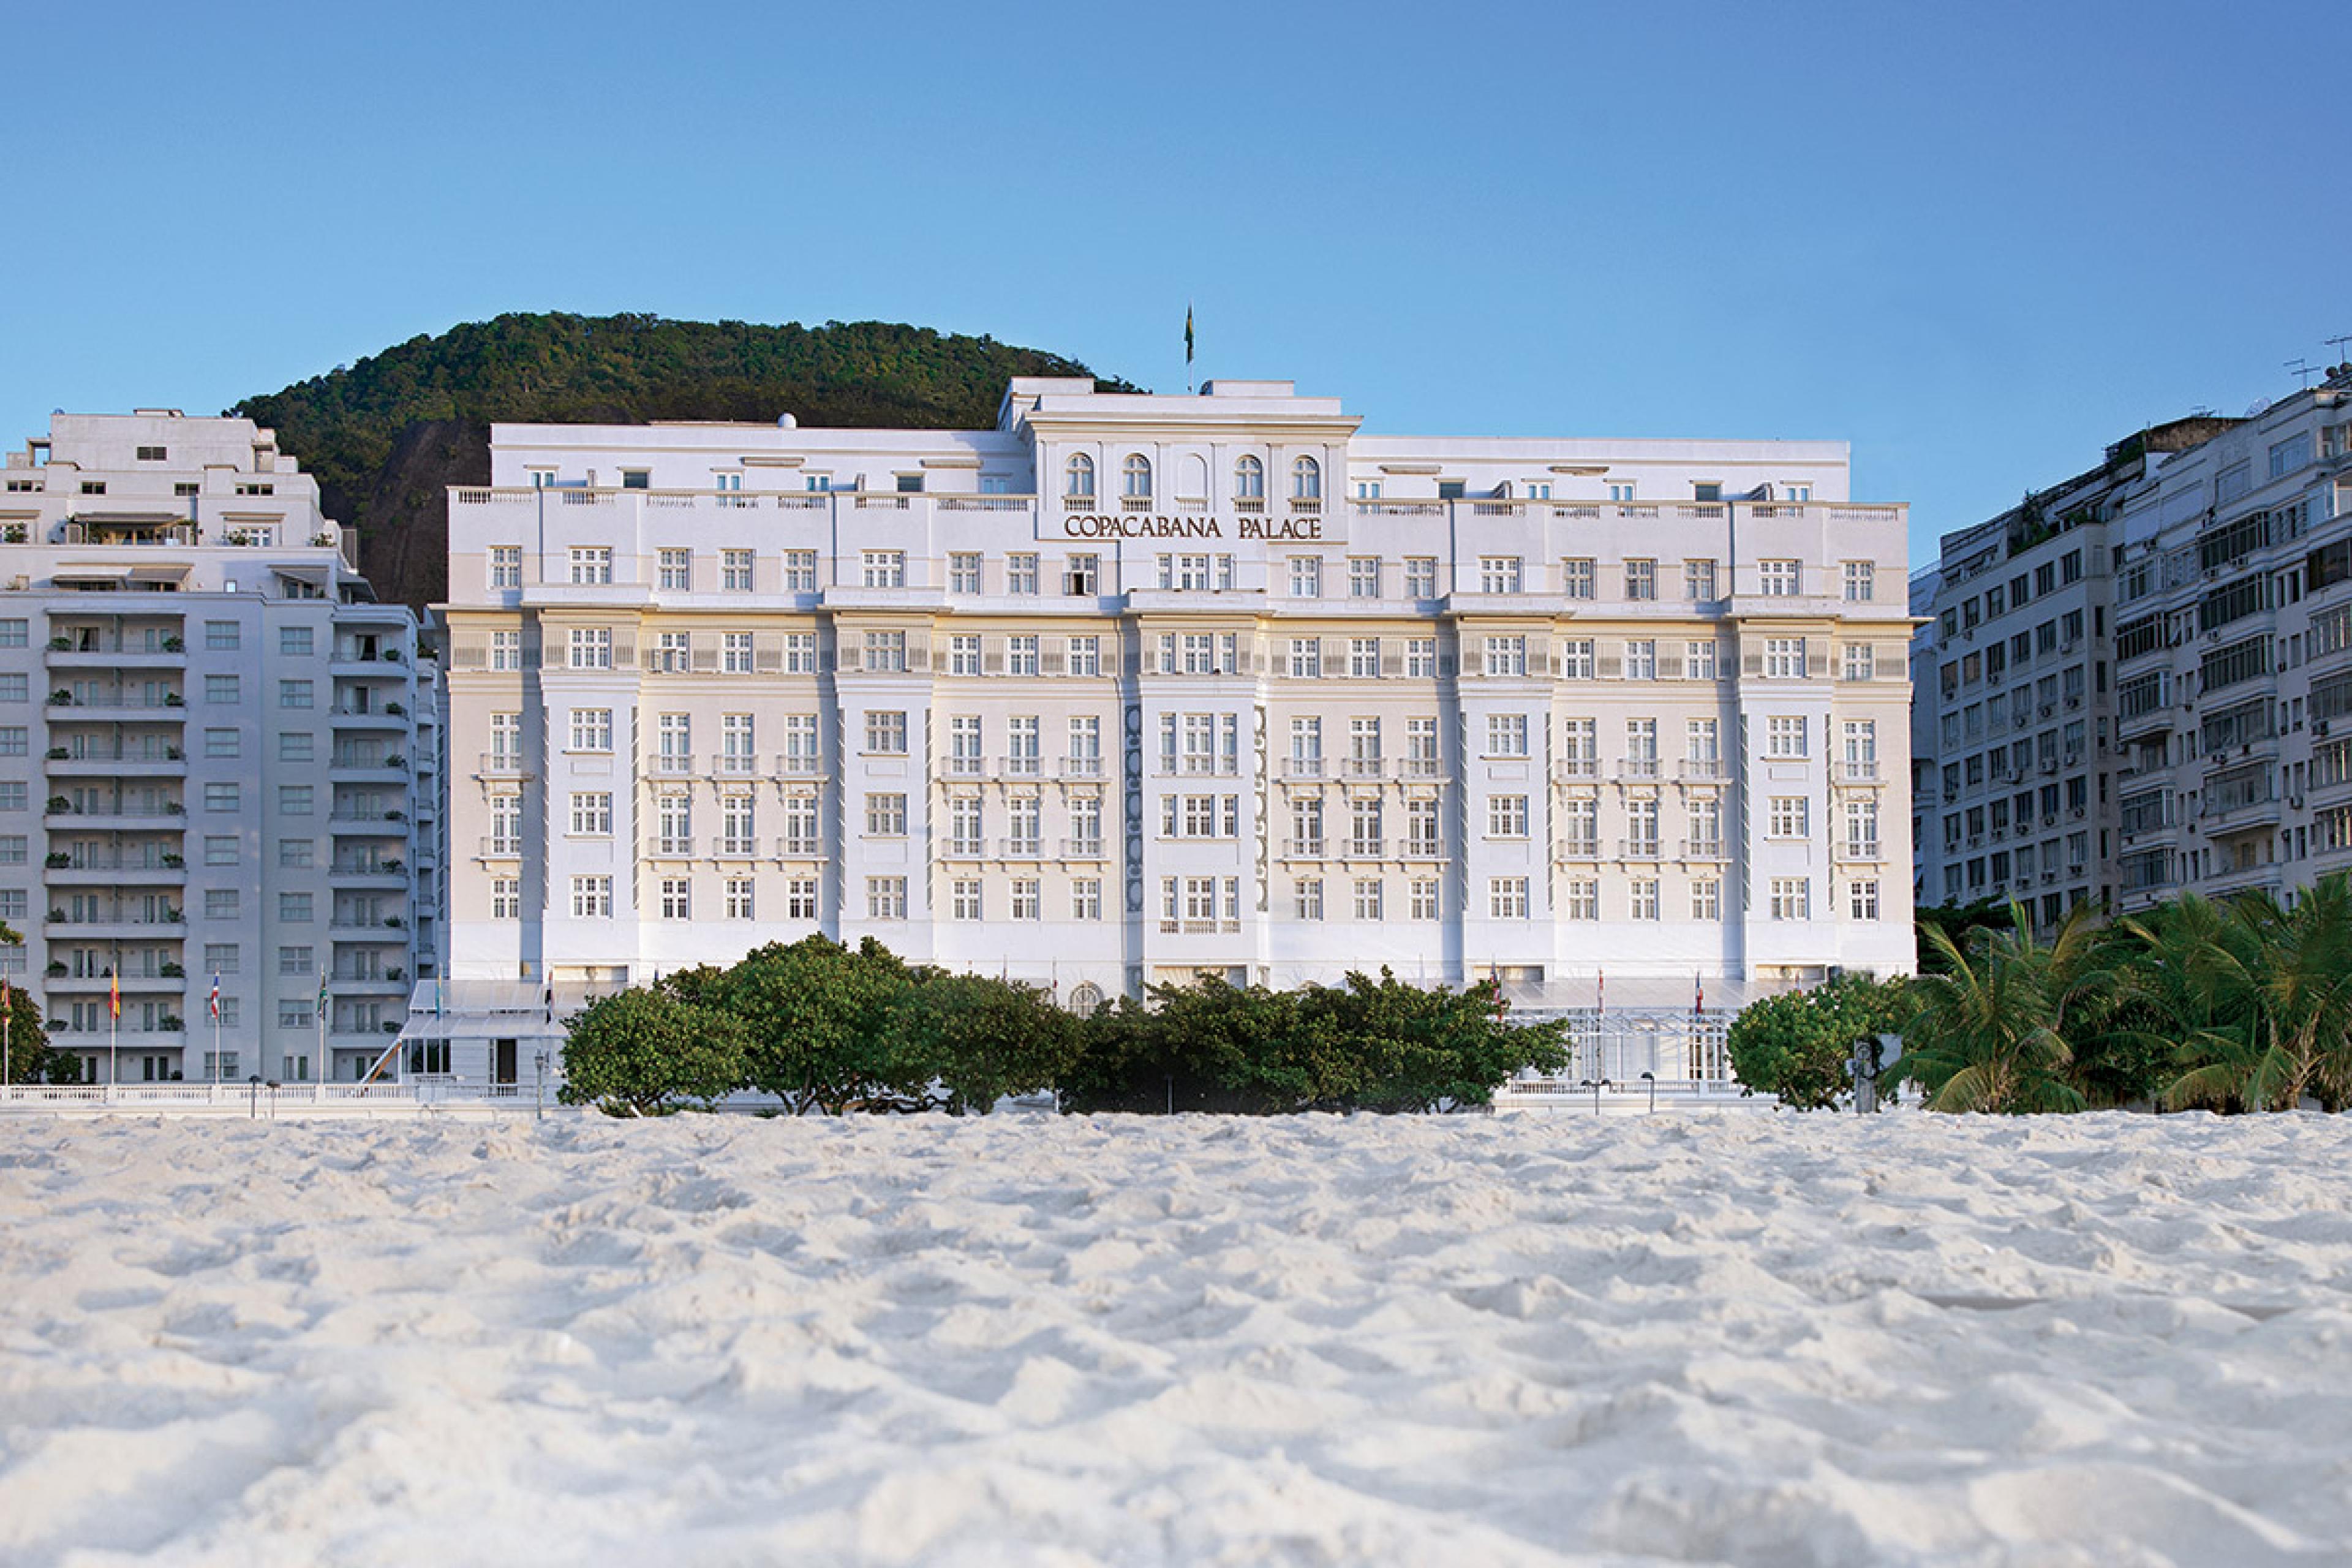 copacabana palace belmond hotel seen from beach